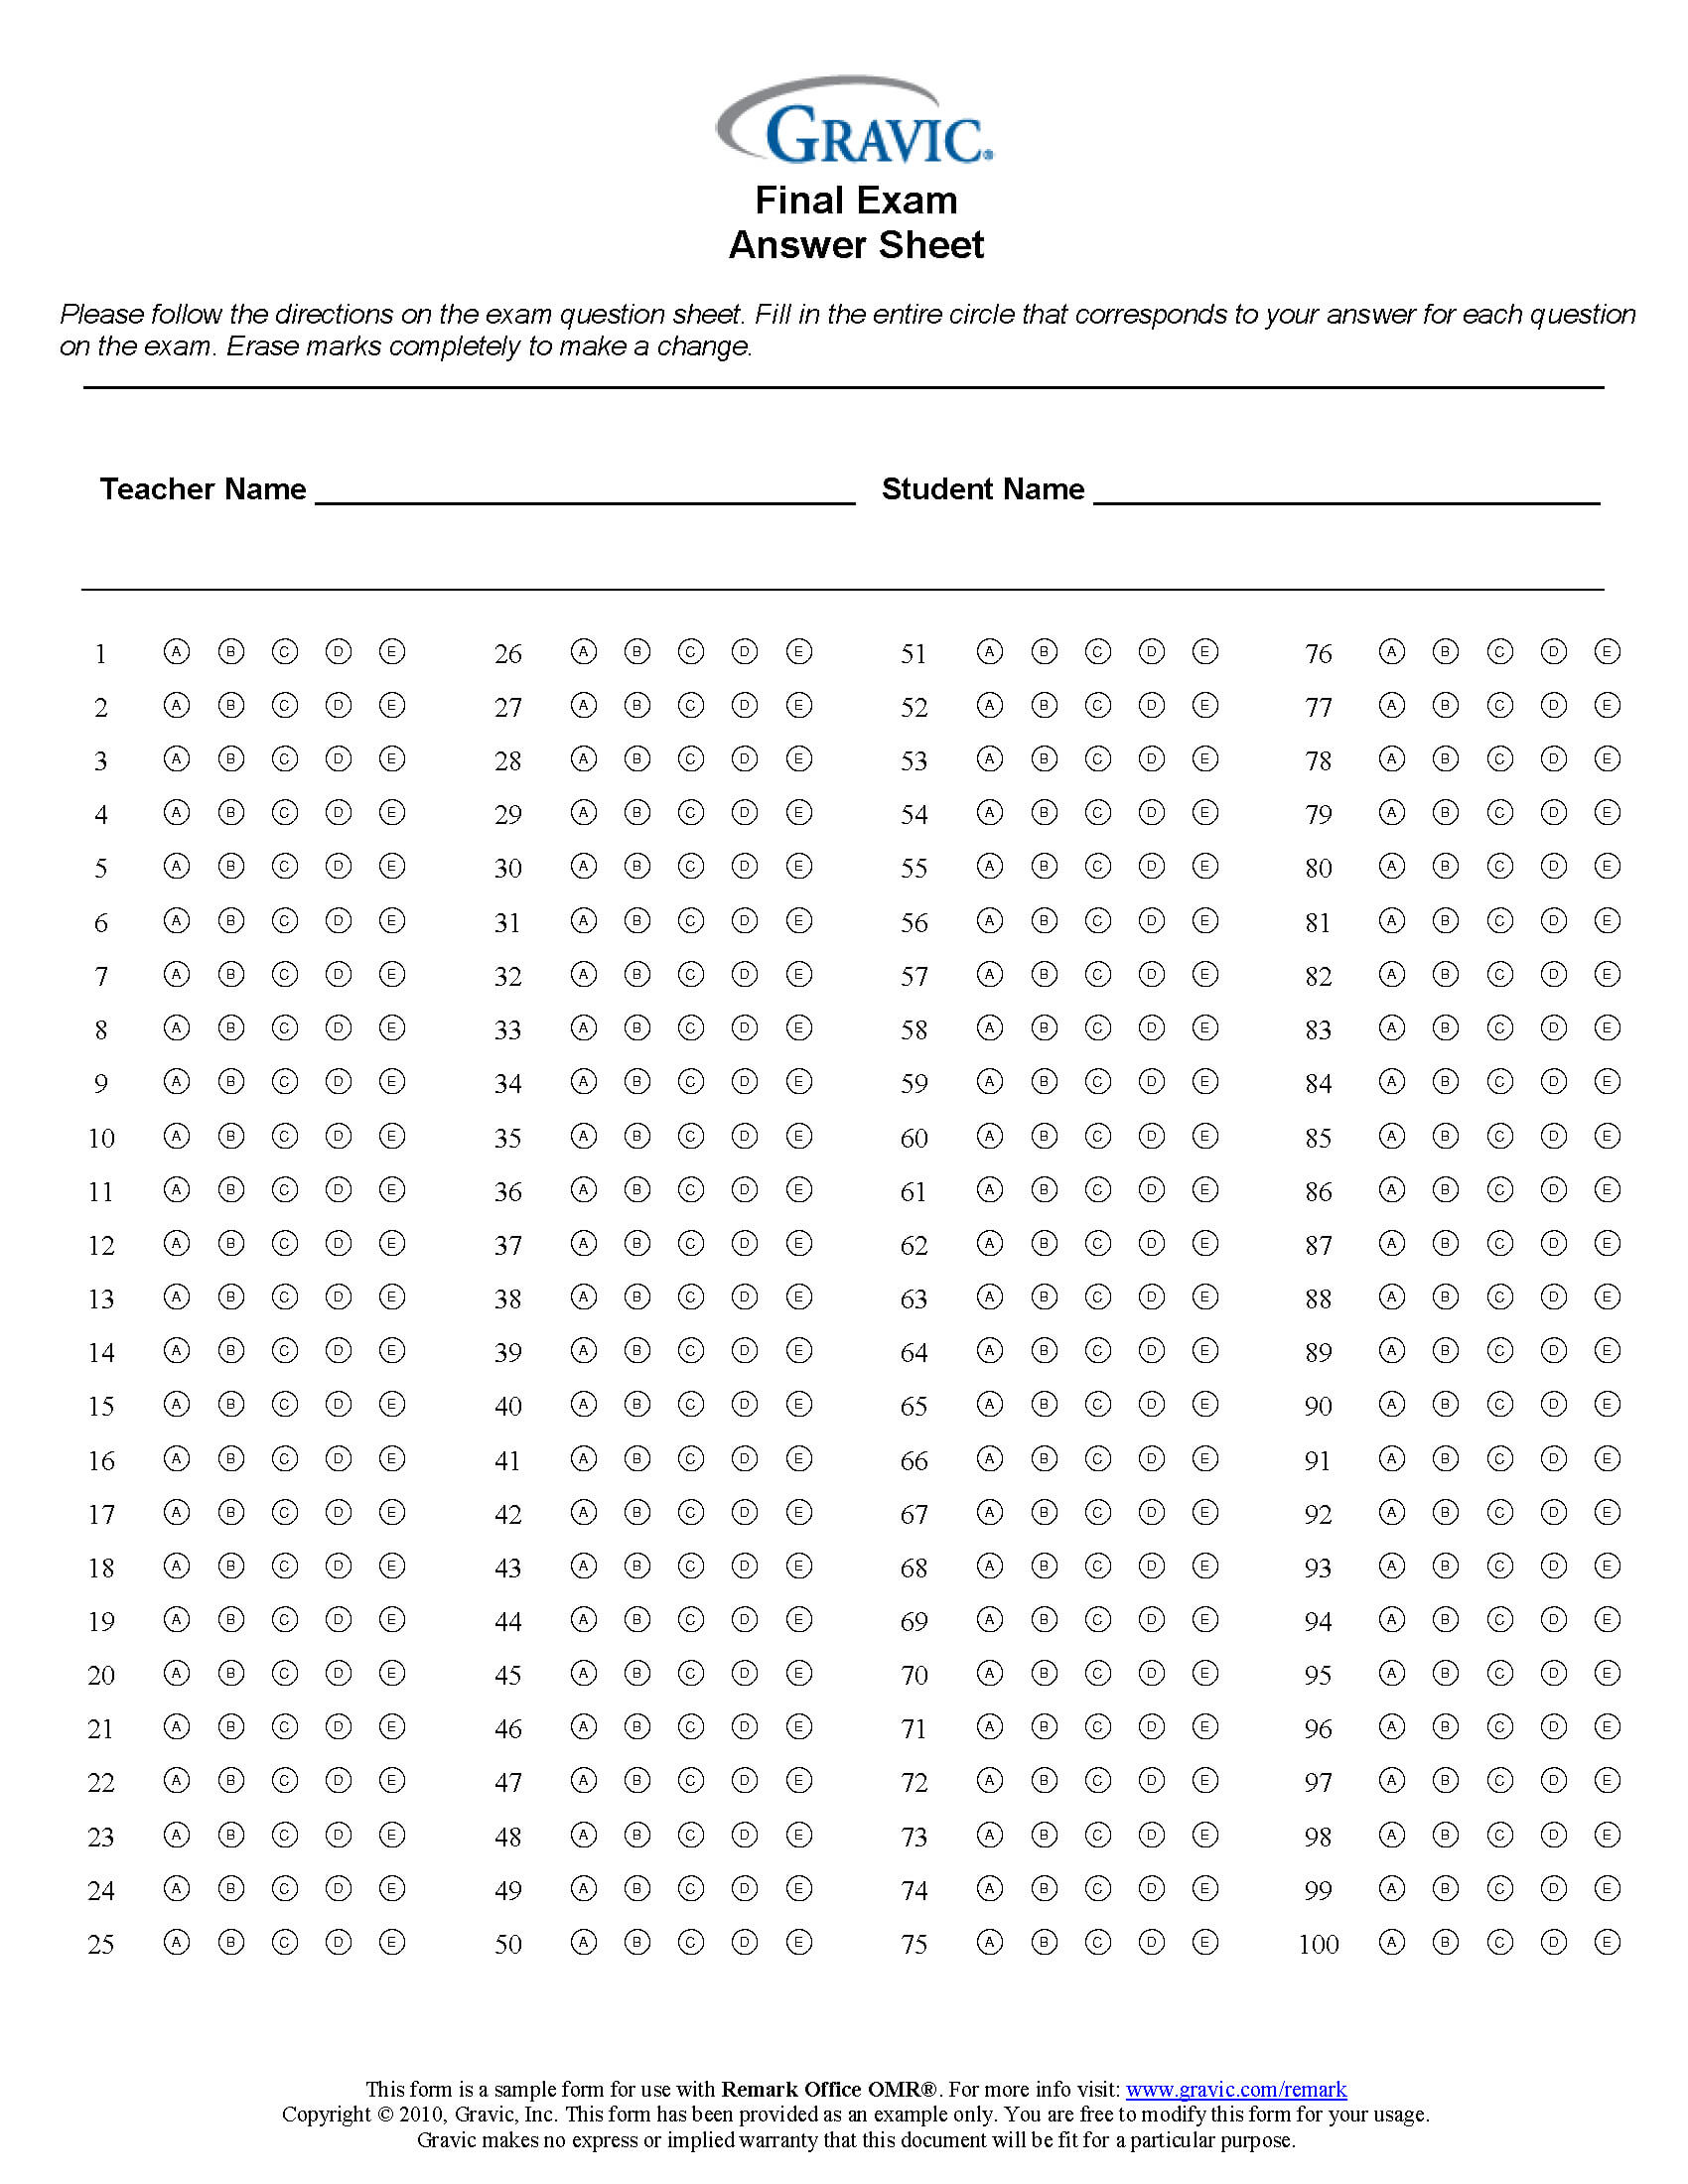 Final Exam 100 Question Test Answer Sheet · Remark Software Regarding Blank Answer Sheet Template 1 100